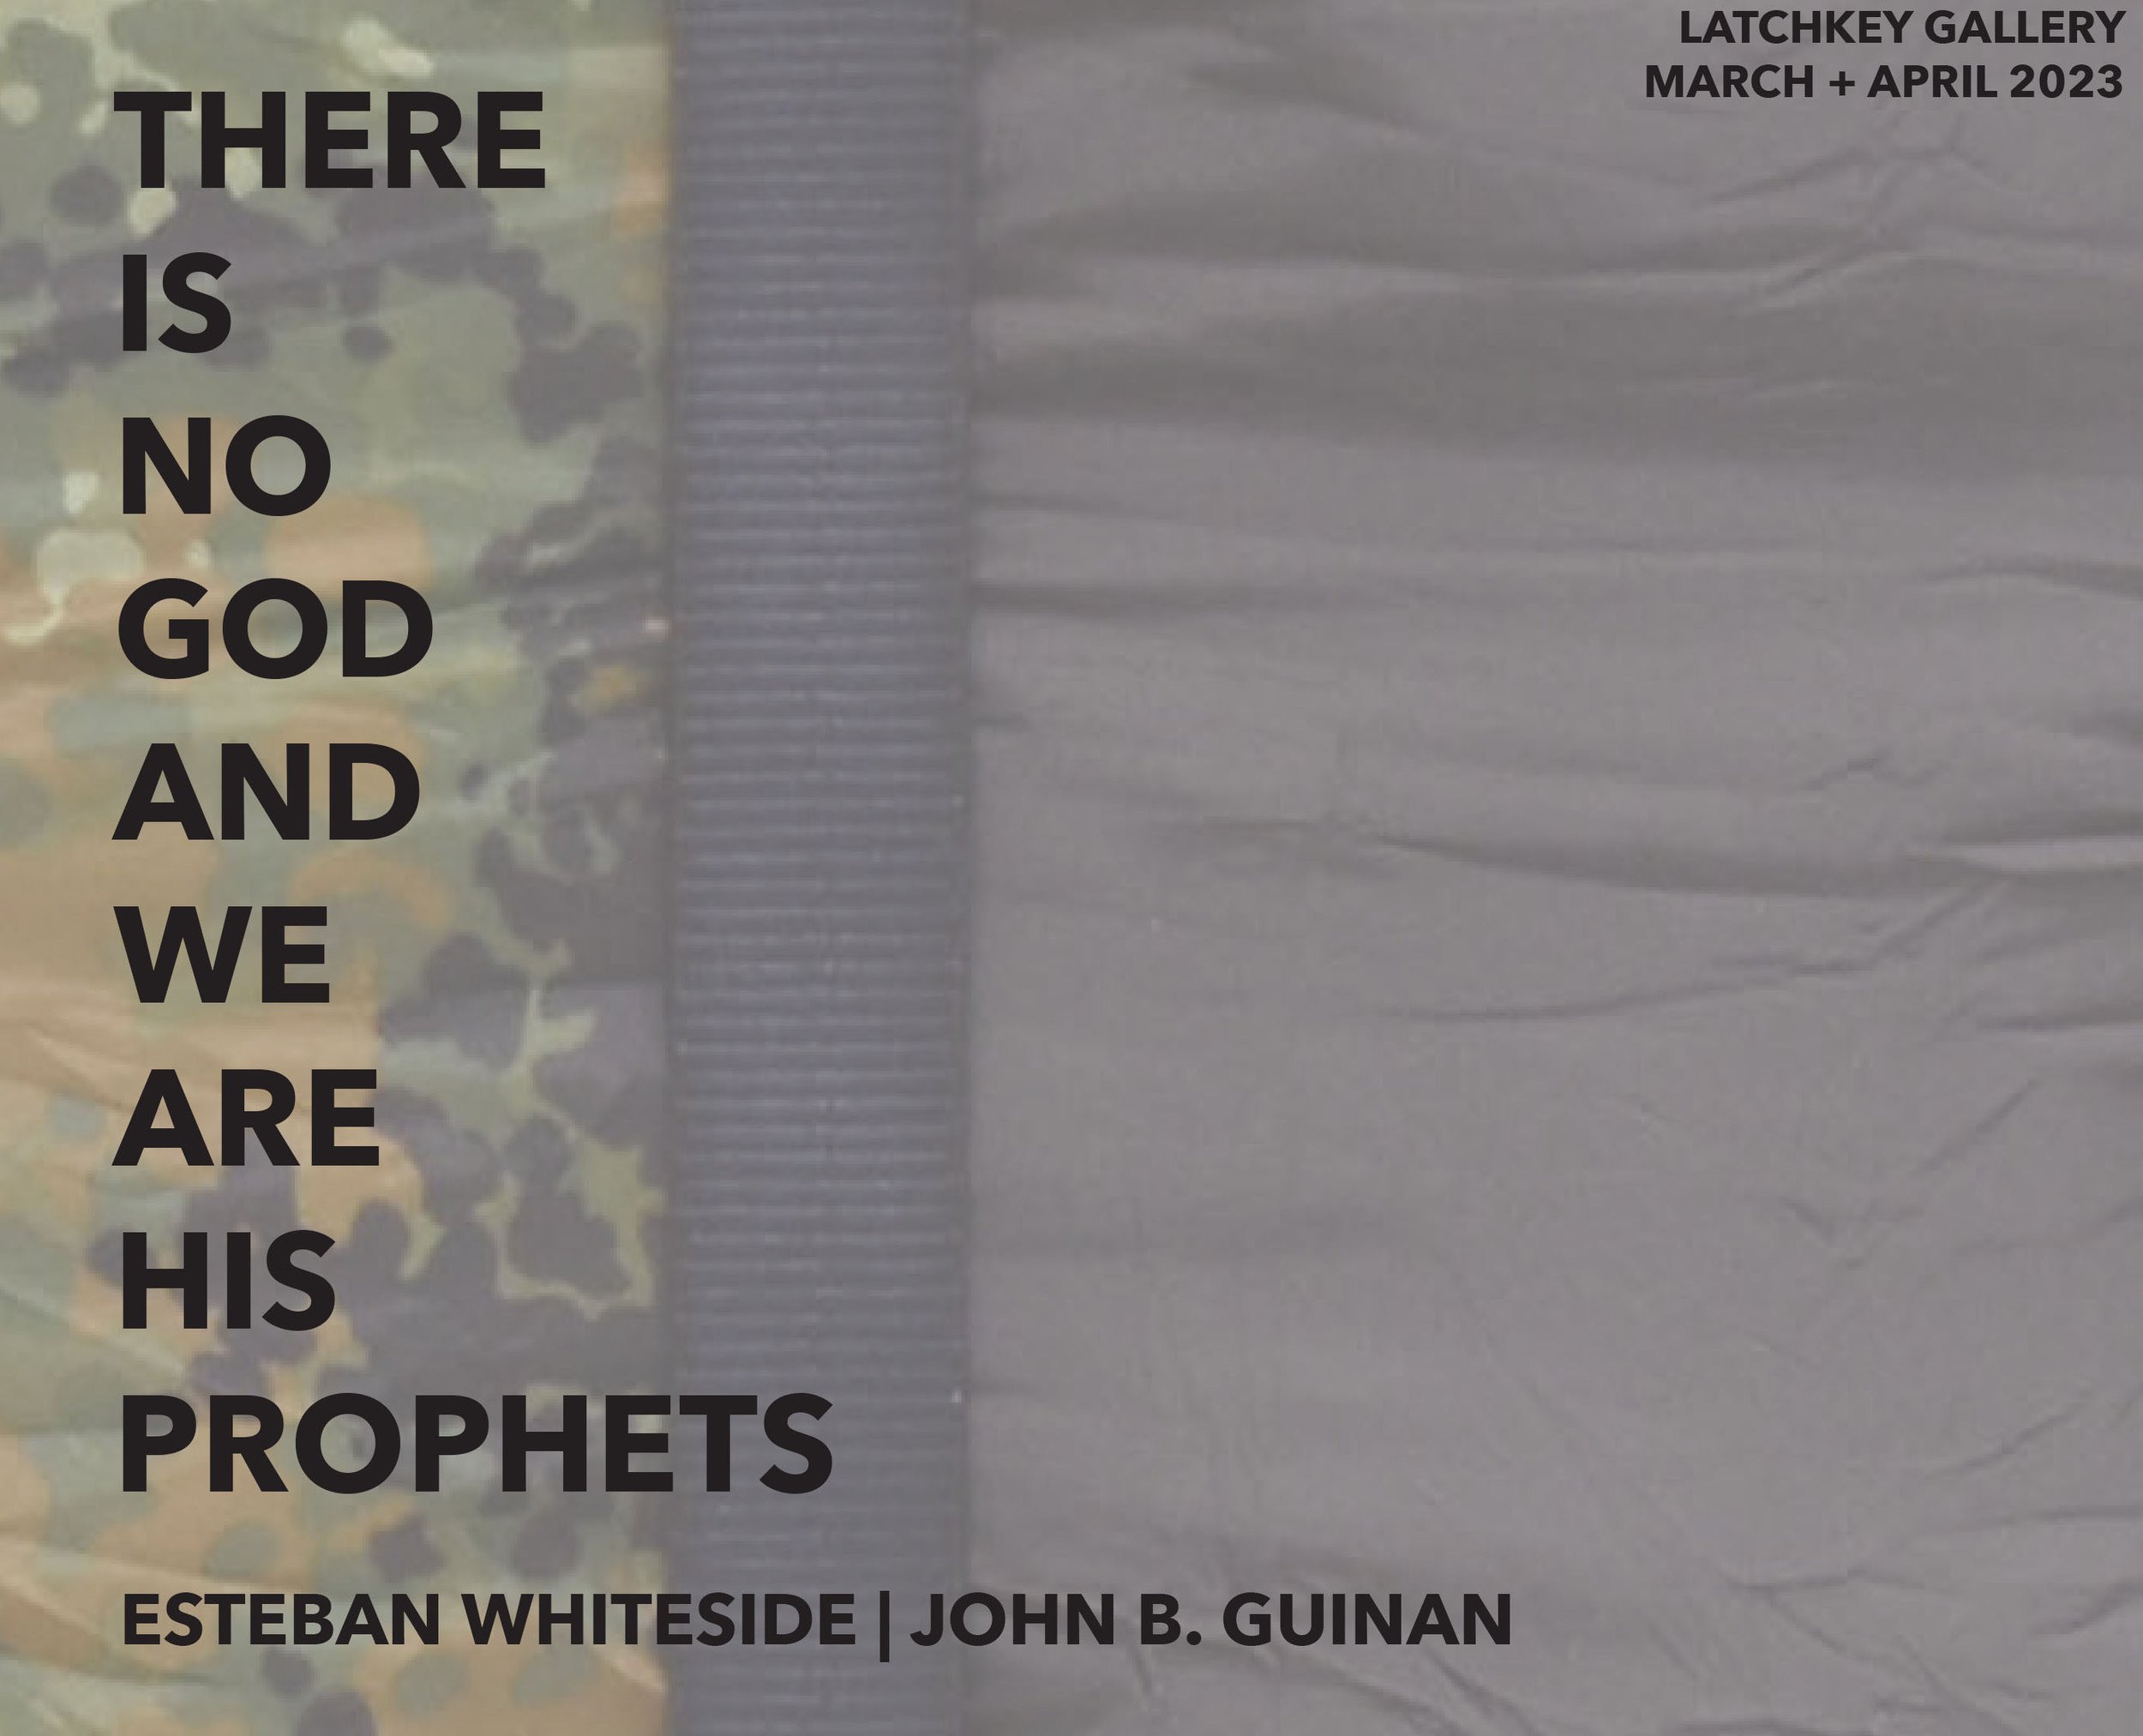 ESTEBAN WHITESIDE | JOHN B. GUINAN